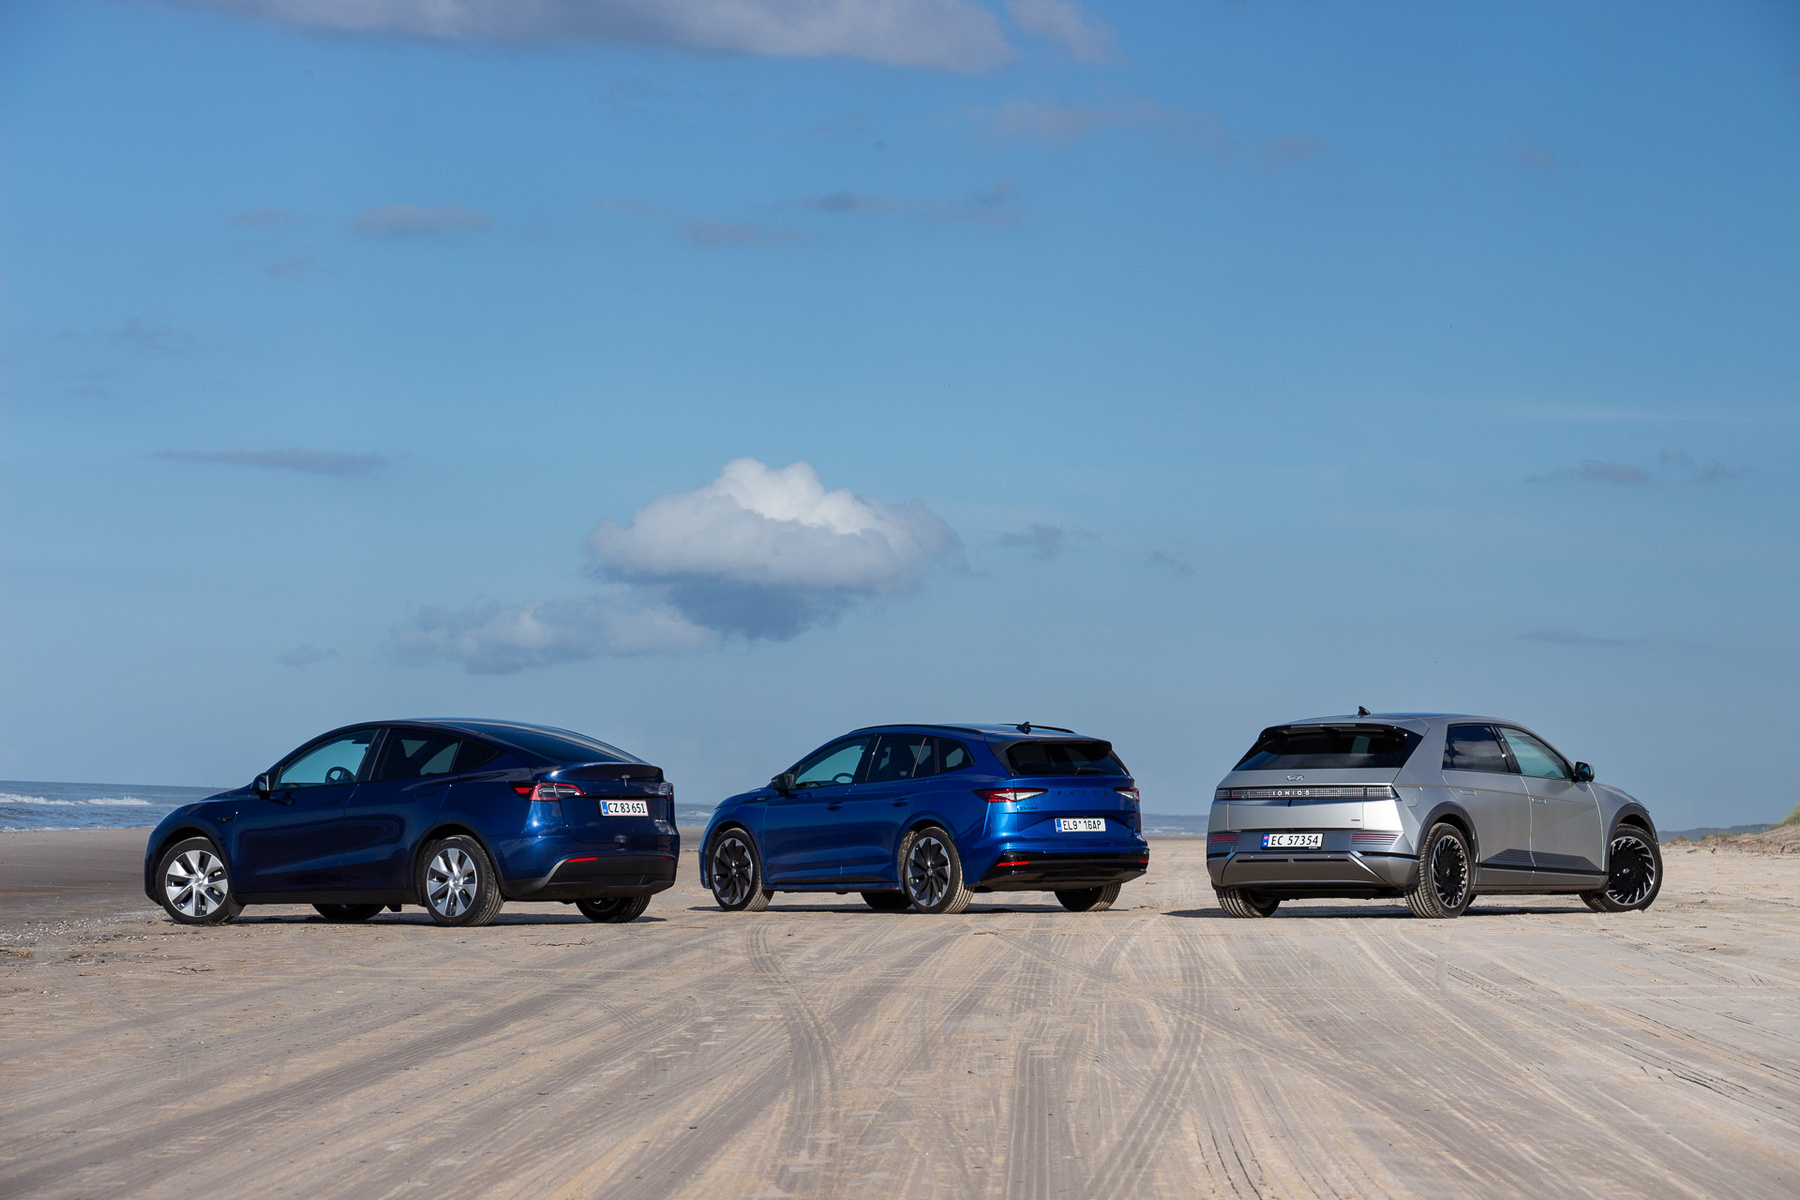 Balról jobbra: Tesla 854 liter+117 elöl, Skoda 585 liter, Hyundai 527 liter+27 elöl